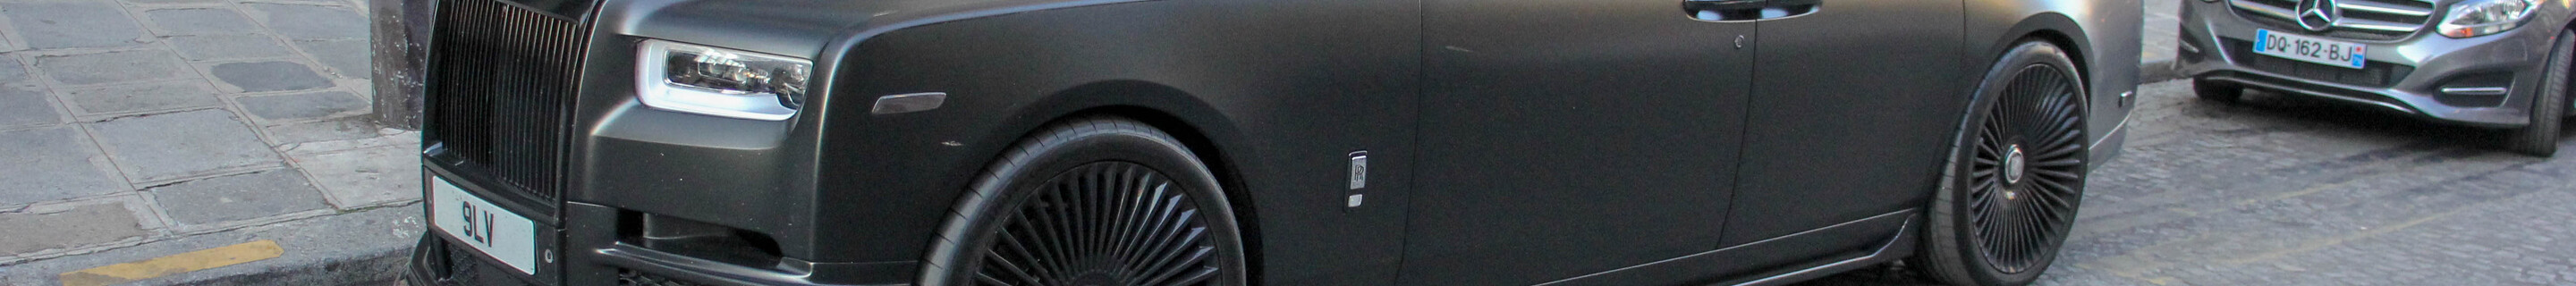 Rolls-Royce Revere Phantom VIII